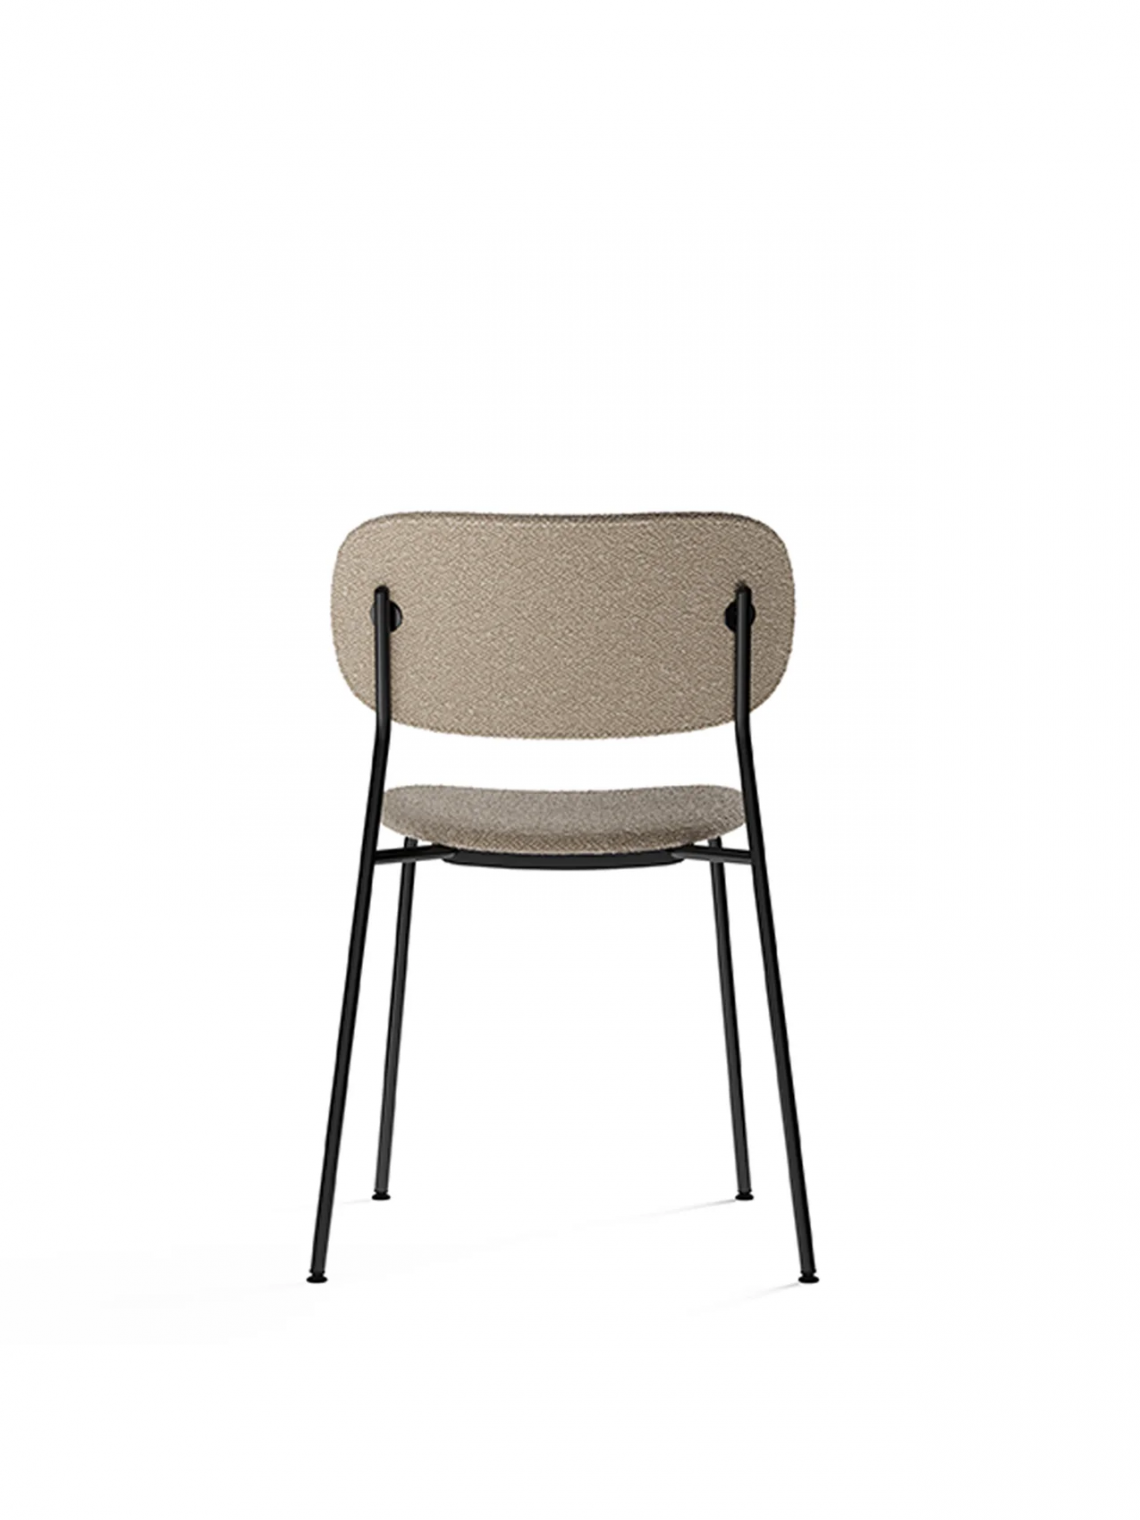 Co fully upholstered, Chrome餐椅细节图6